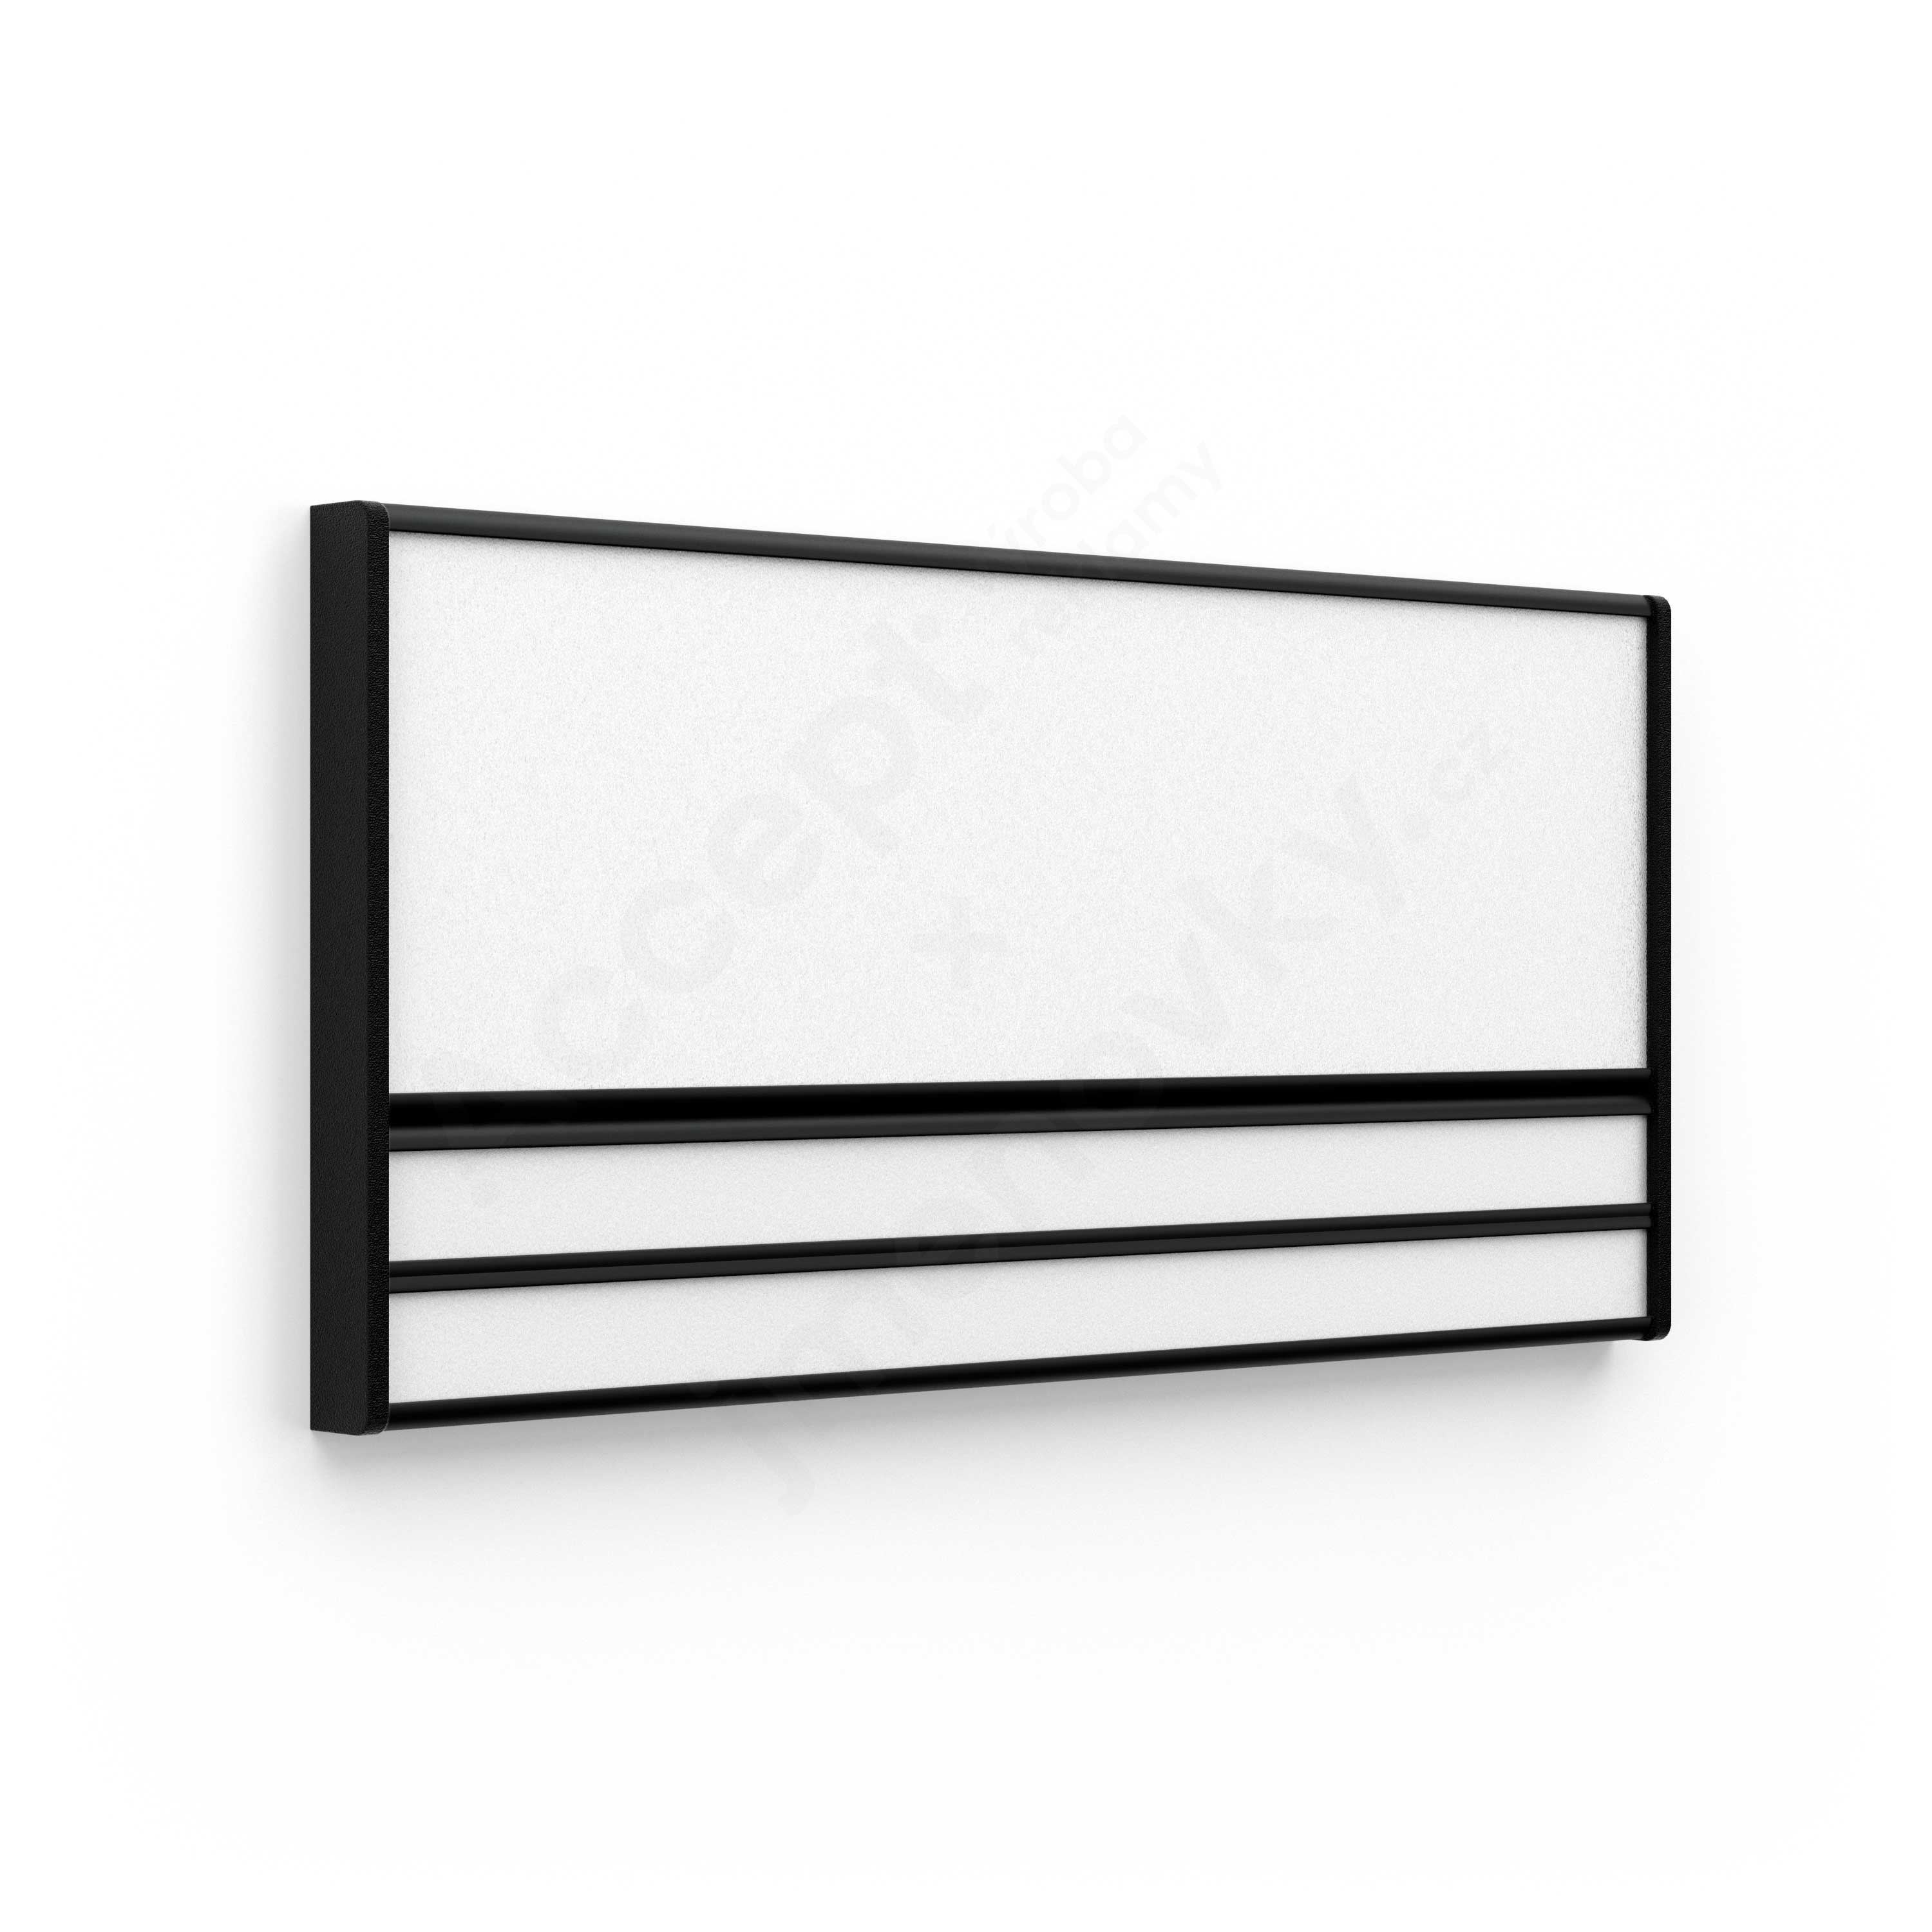 Dveřní tabulka ACS (zásuvný systém, 187 × 93 mm)